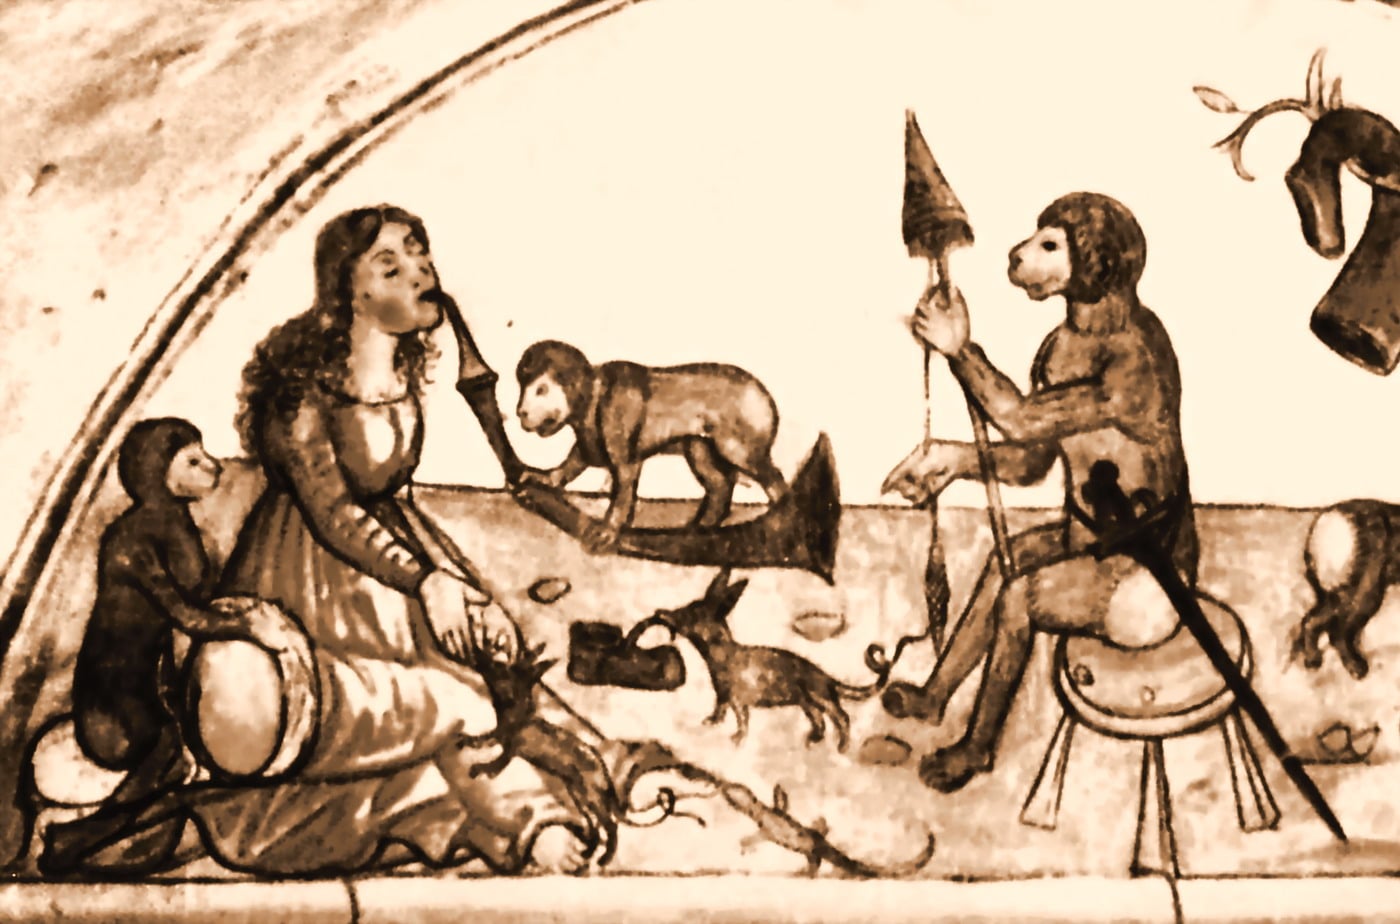 Anonimo (XV secolo?), “Scena con dama e animali”, XV secolo (?), affresco (particolare rielaborato). Brescia (Lombardia – Italia). Sala delle Scimmie